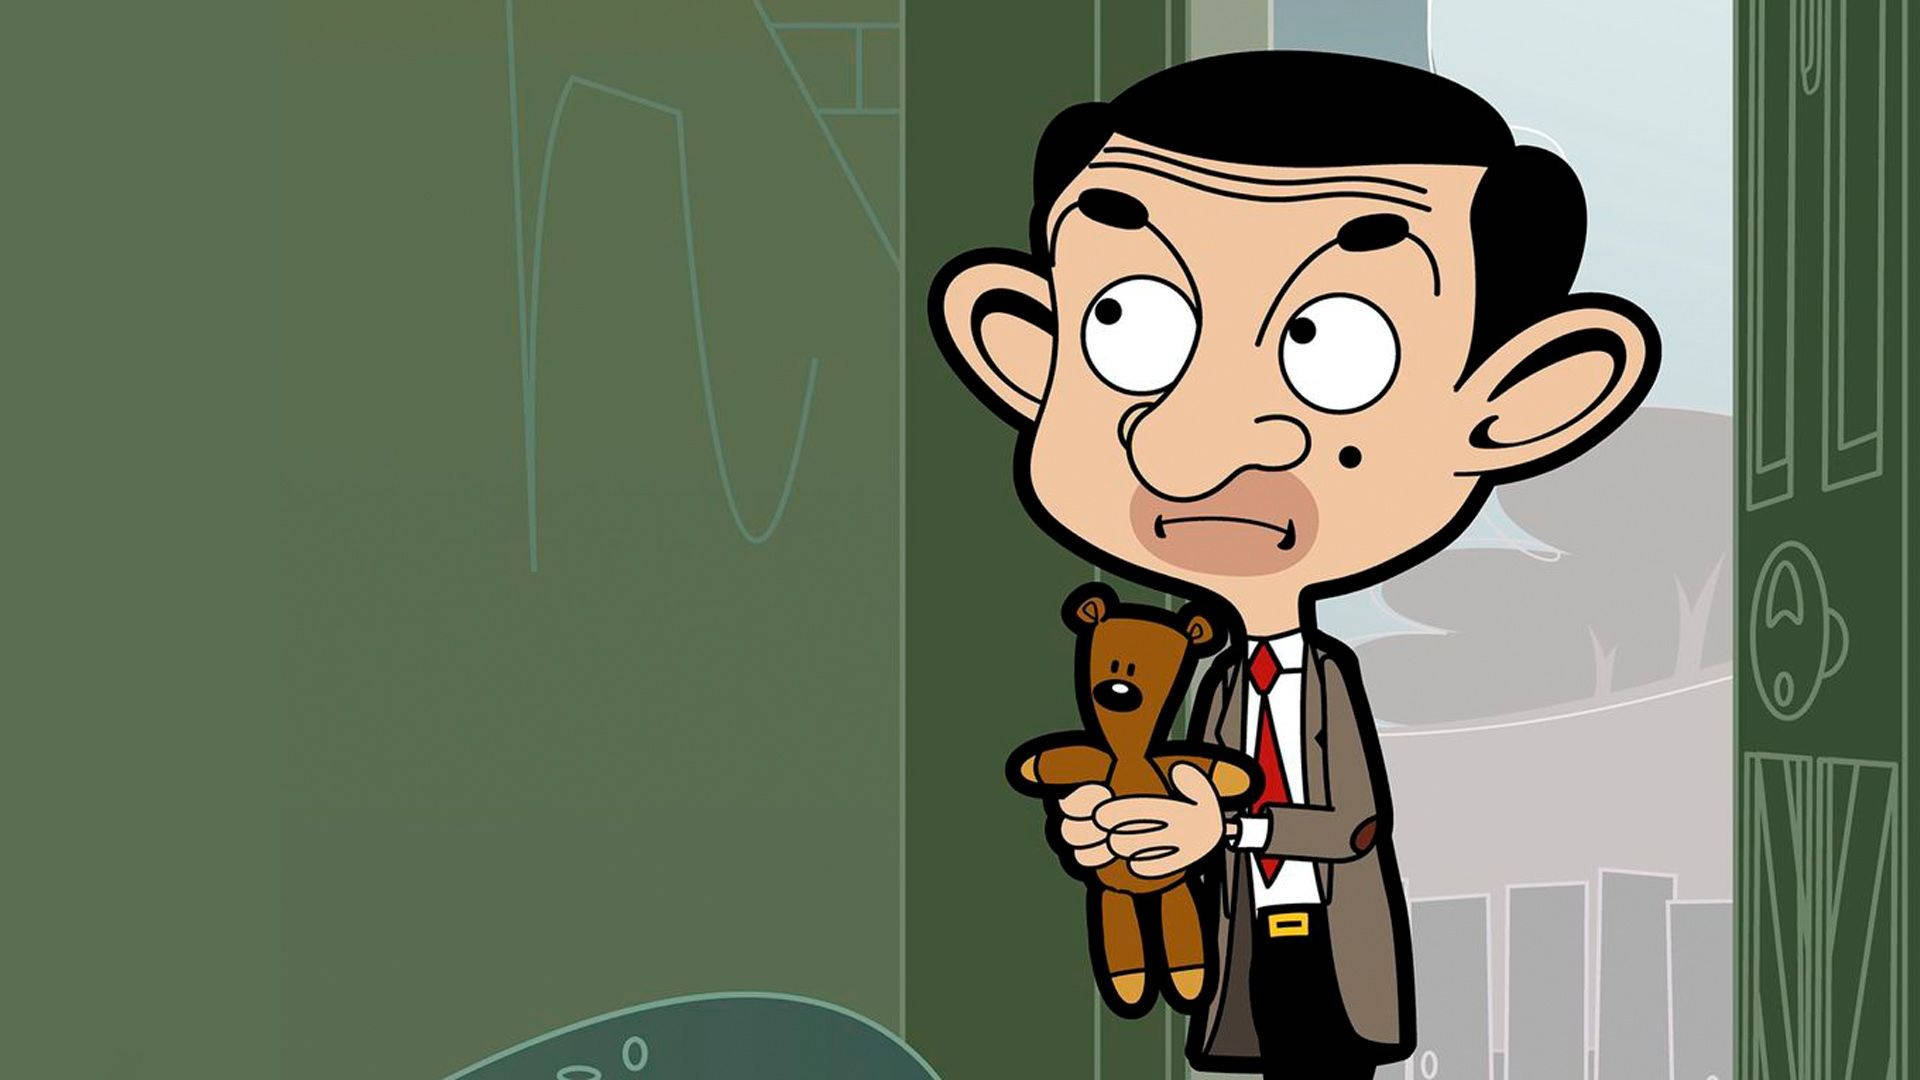 Mr Bean Cartoon And Teddy